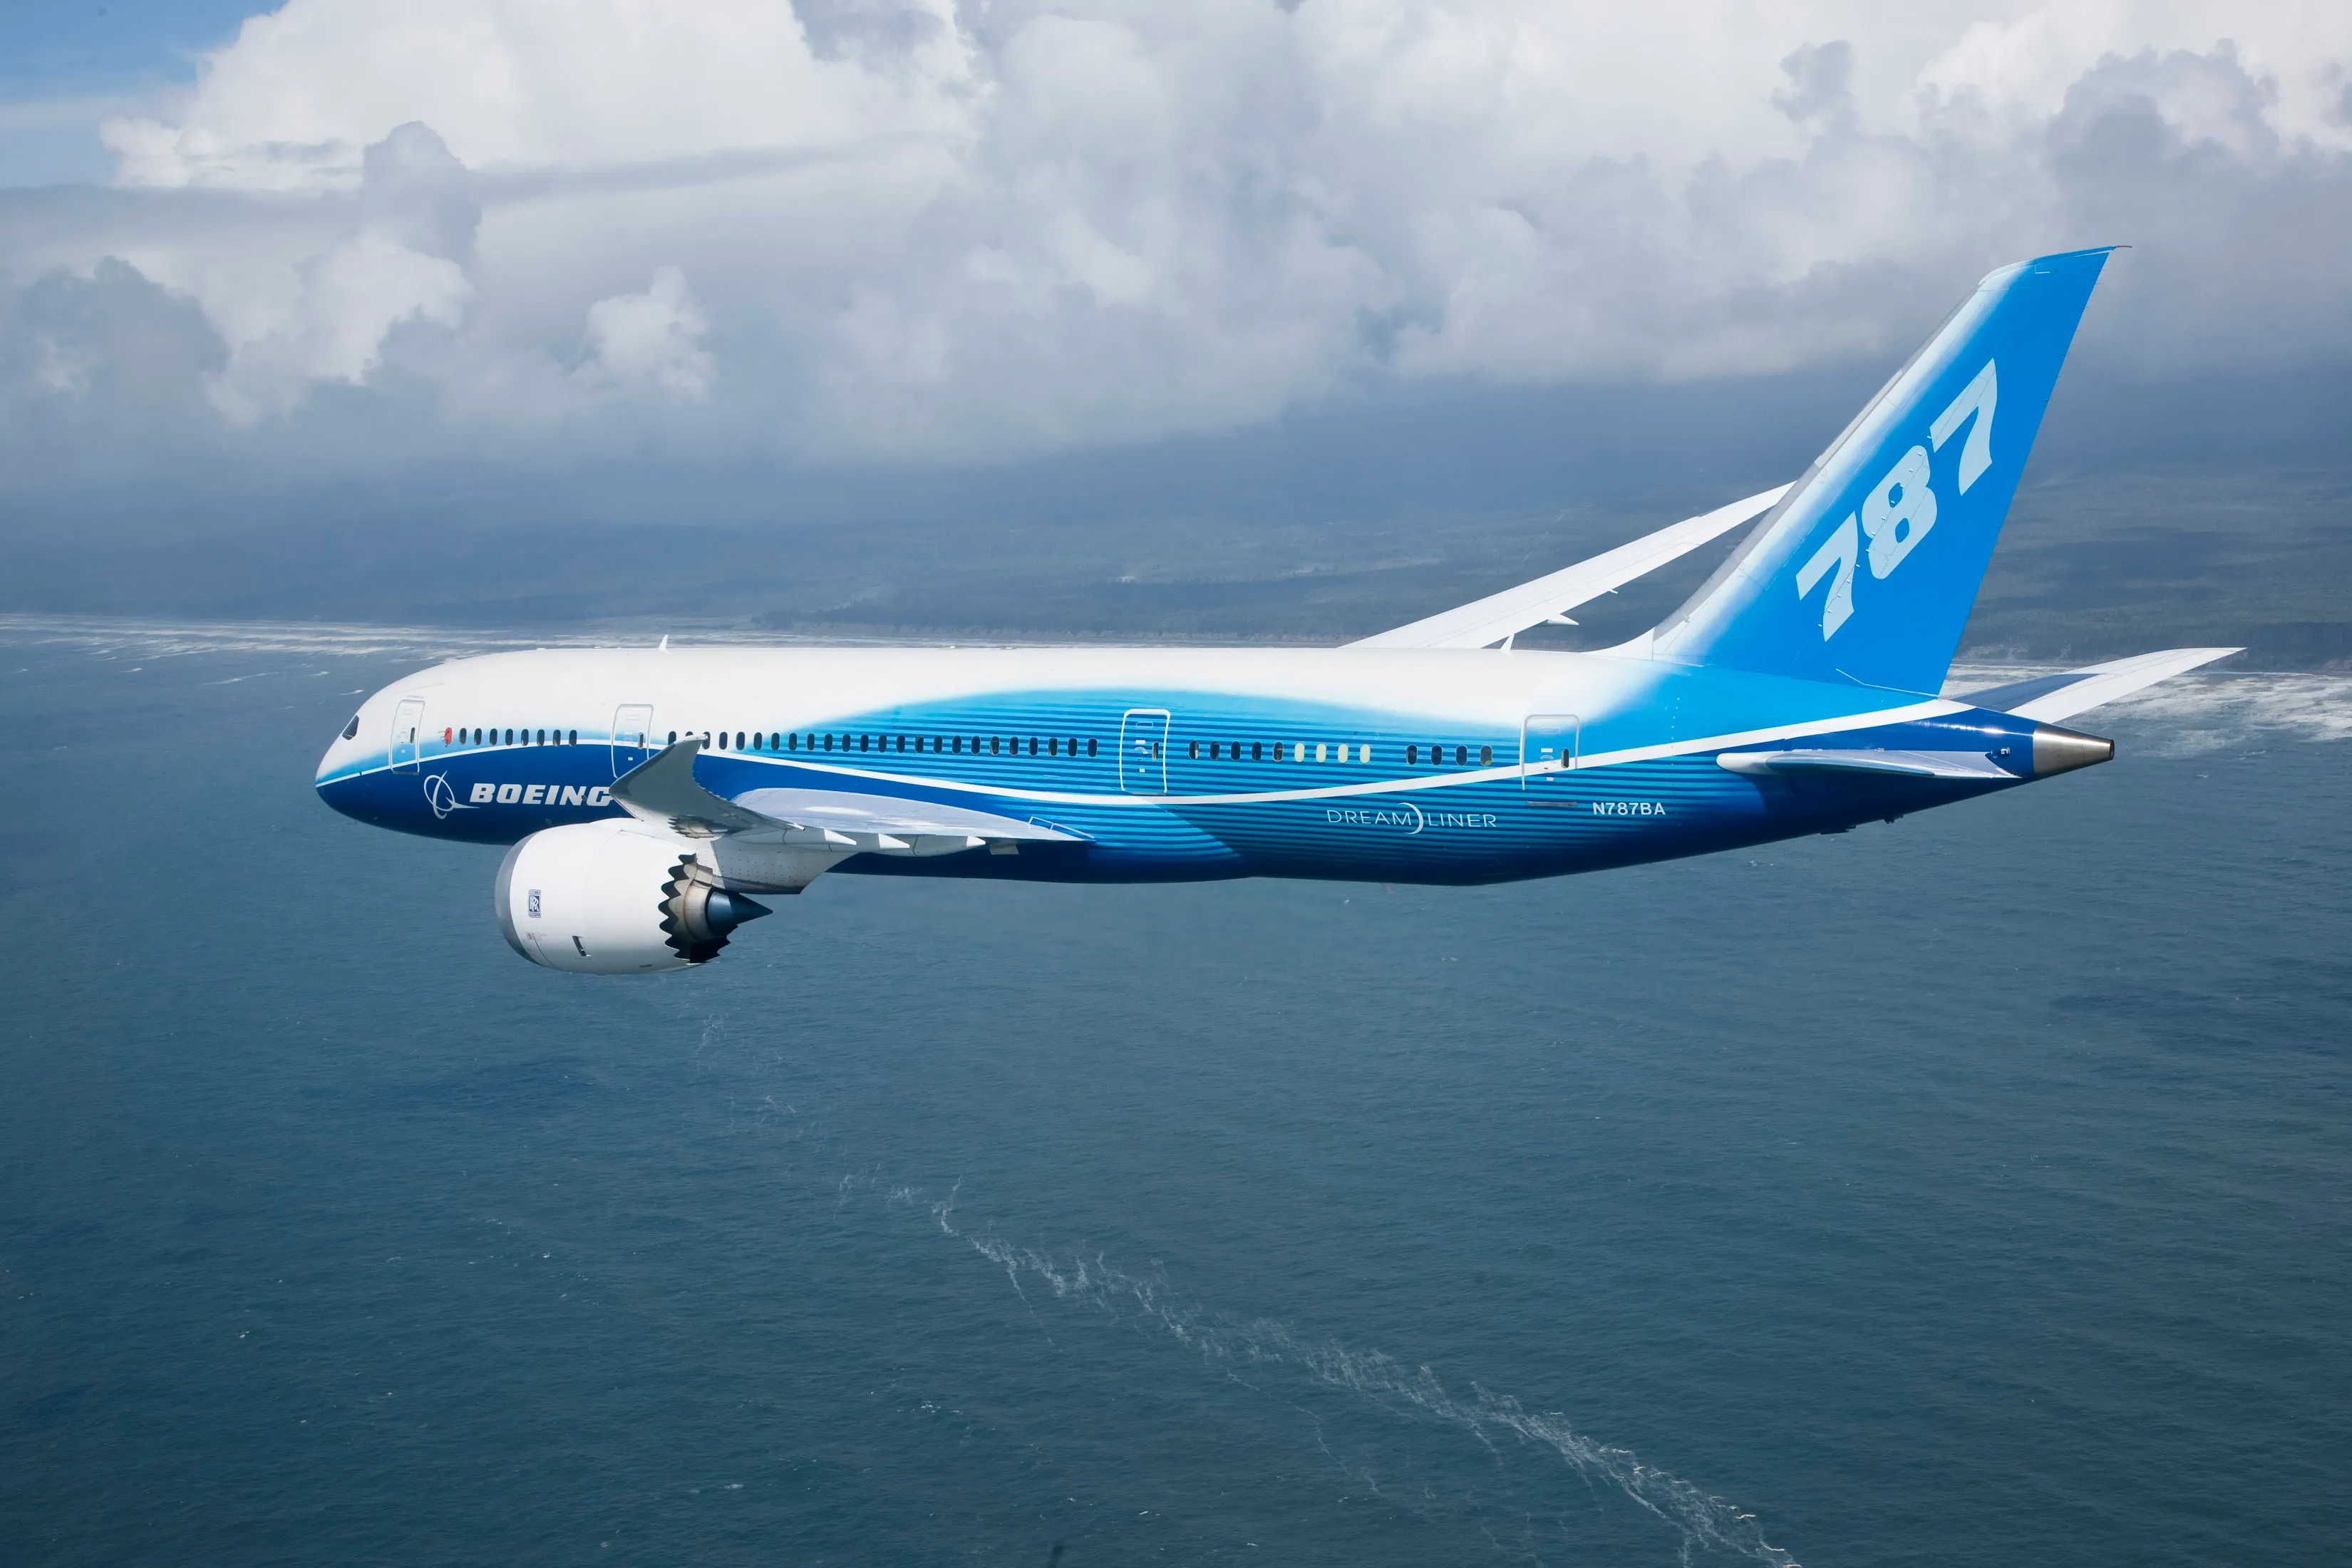 Der größte Auftrag in der Geschichte der Luftfahrt - United Airlines bestellt 100 Boeing 787 Dreamliner und 56 Boeing 737 Max